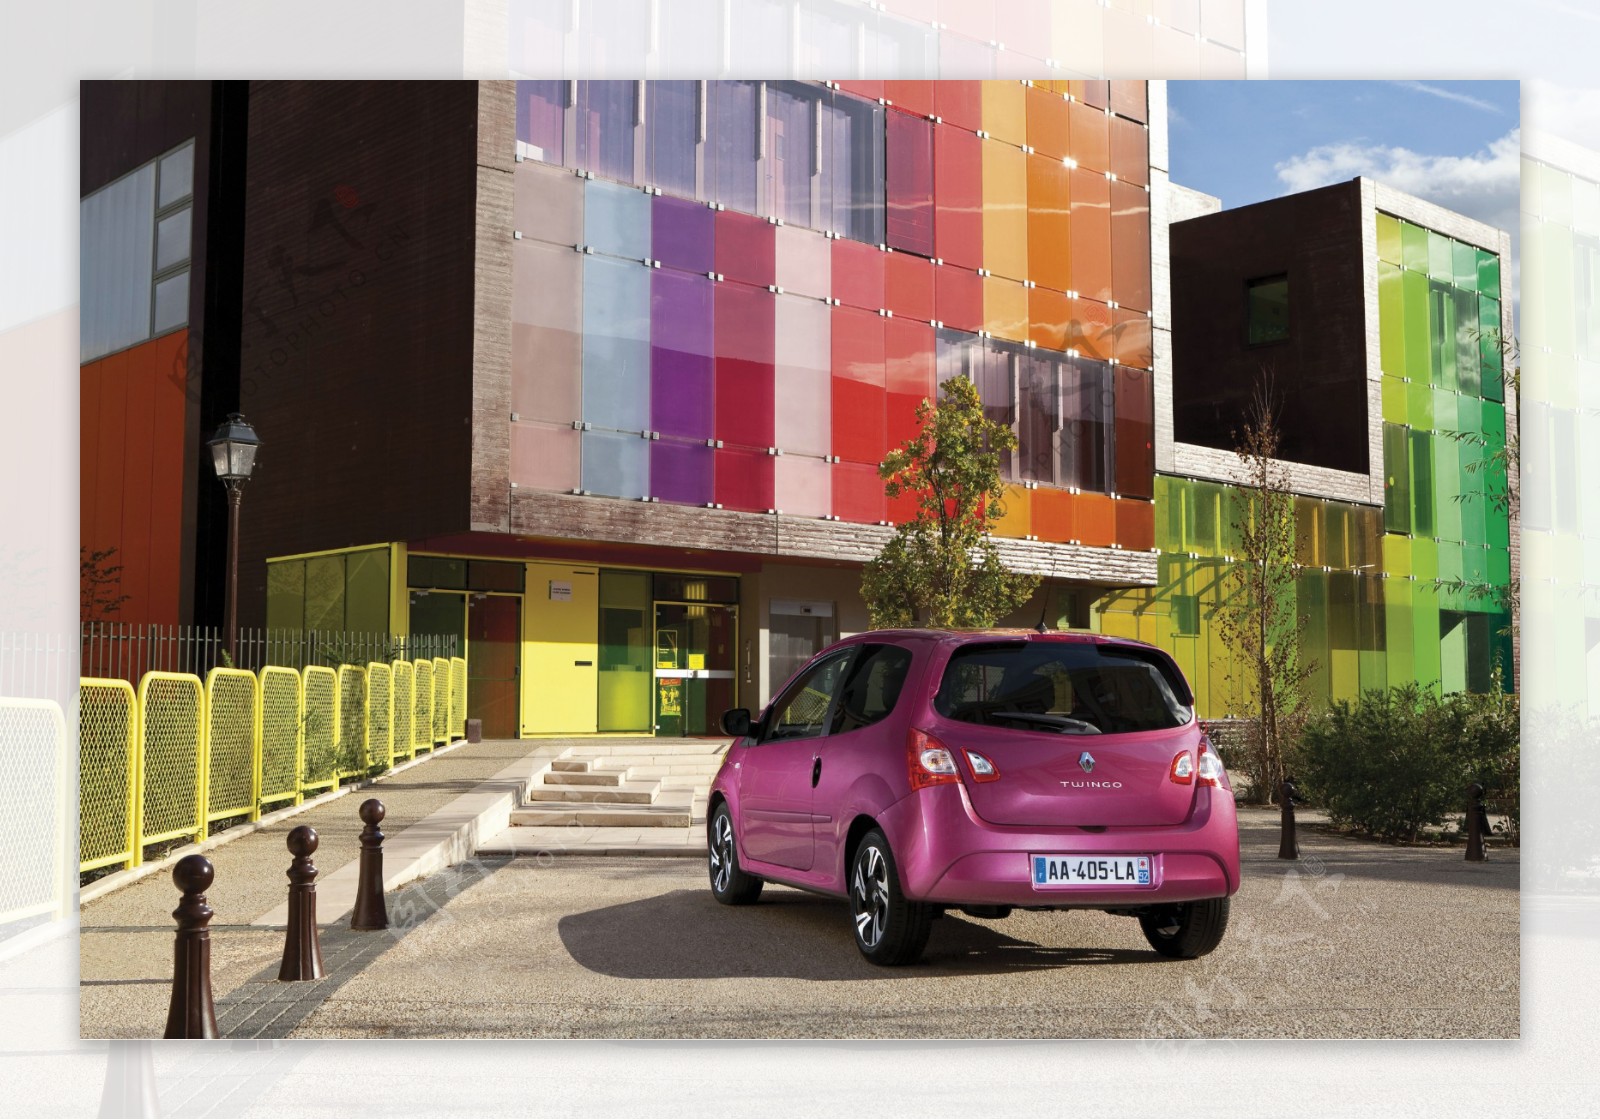 建筑与粉色轿车图片